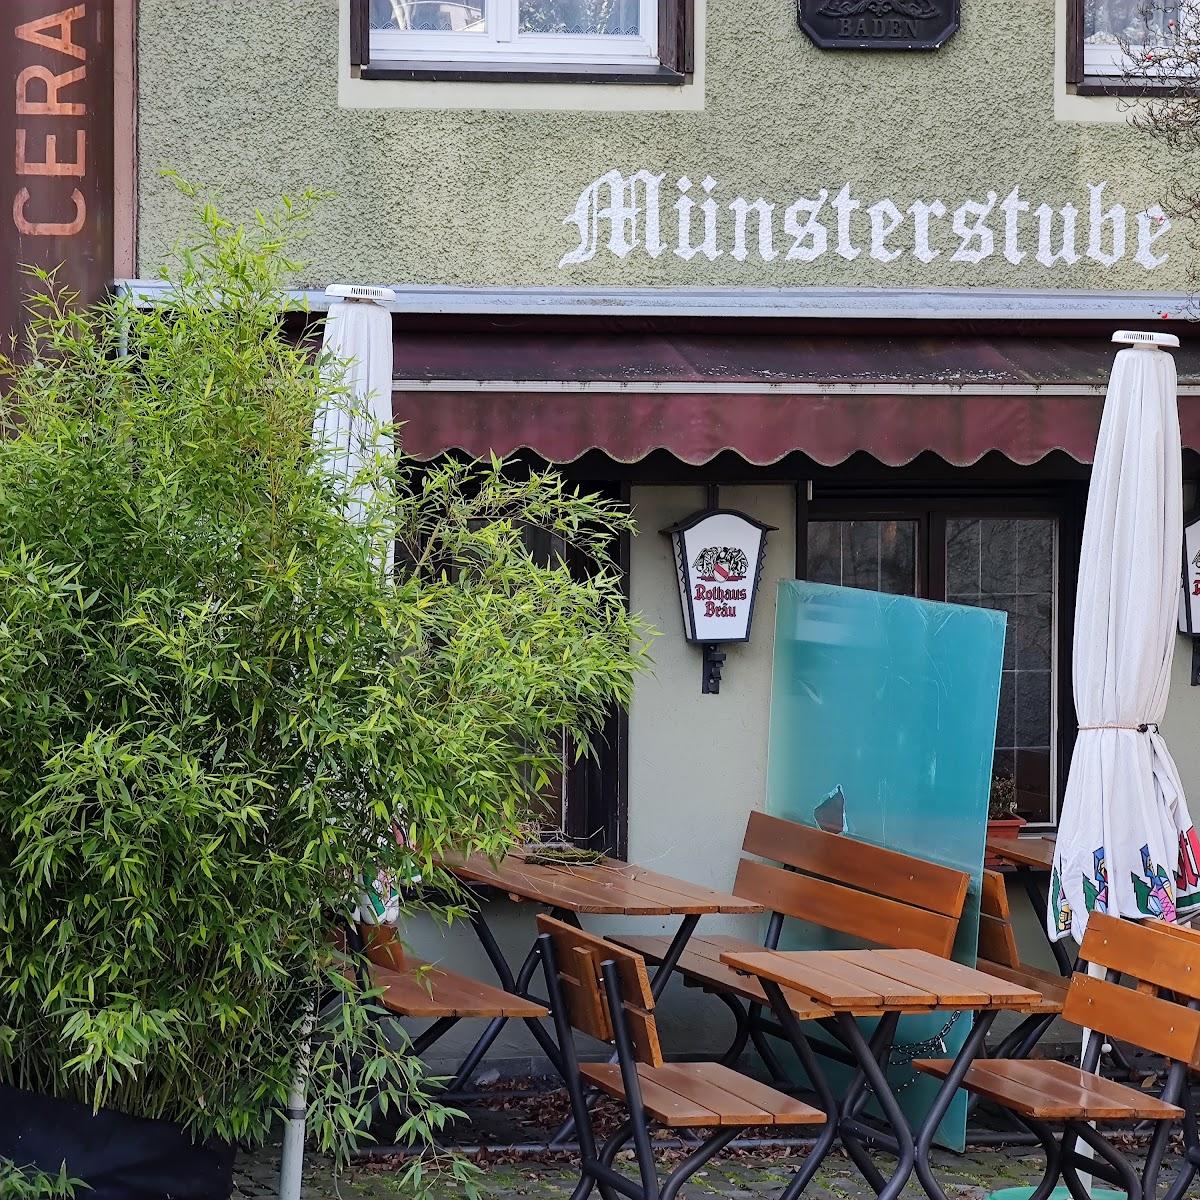 Restaurant "Münsterstube" in Radolfzell am Bodensee